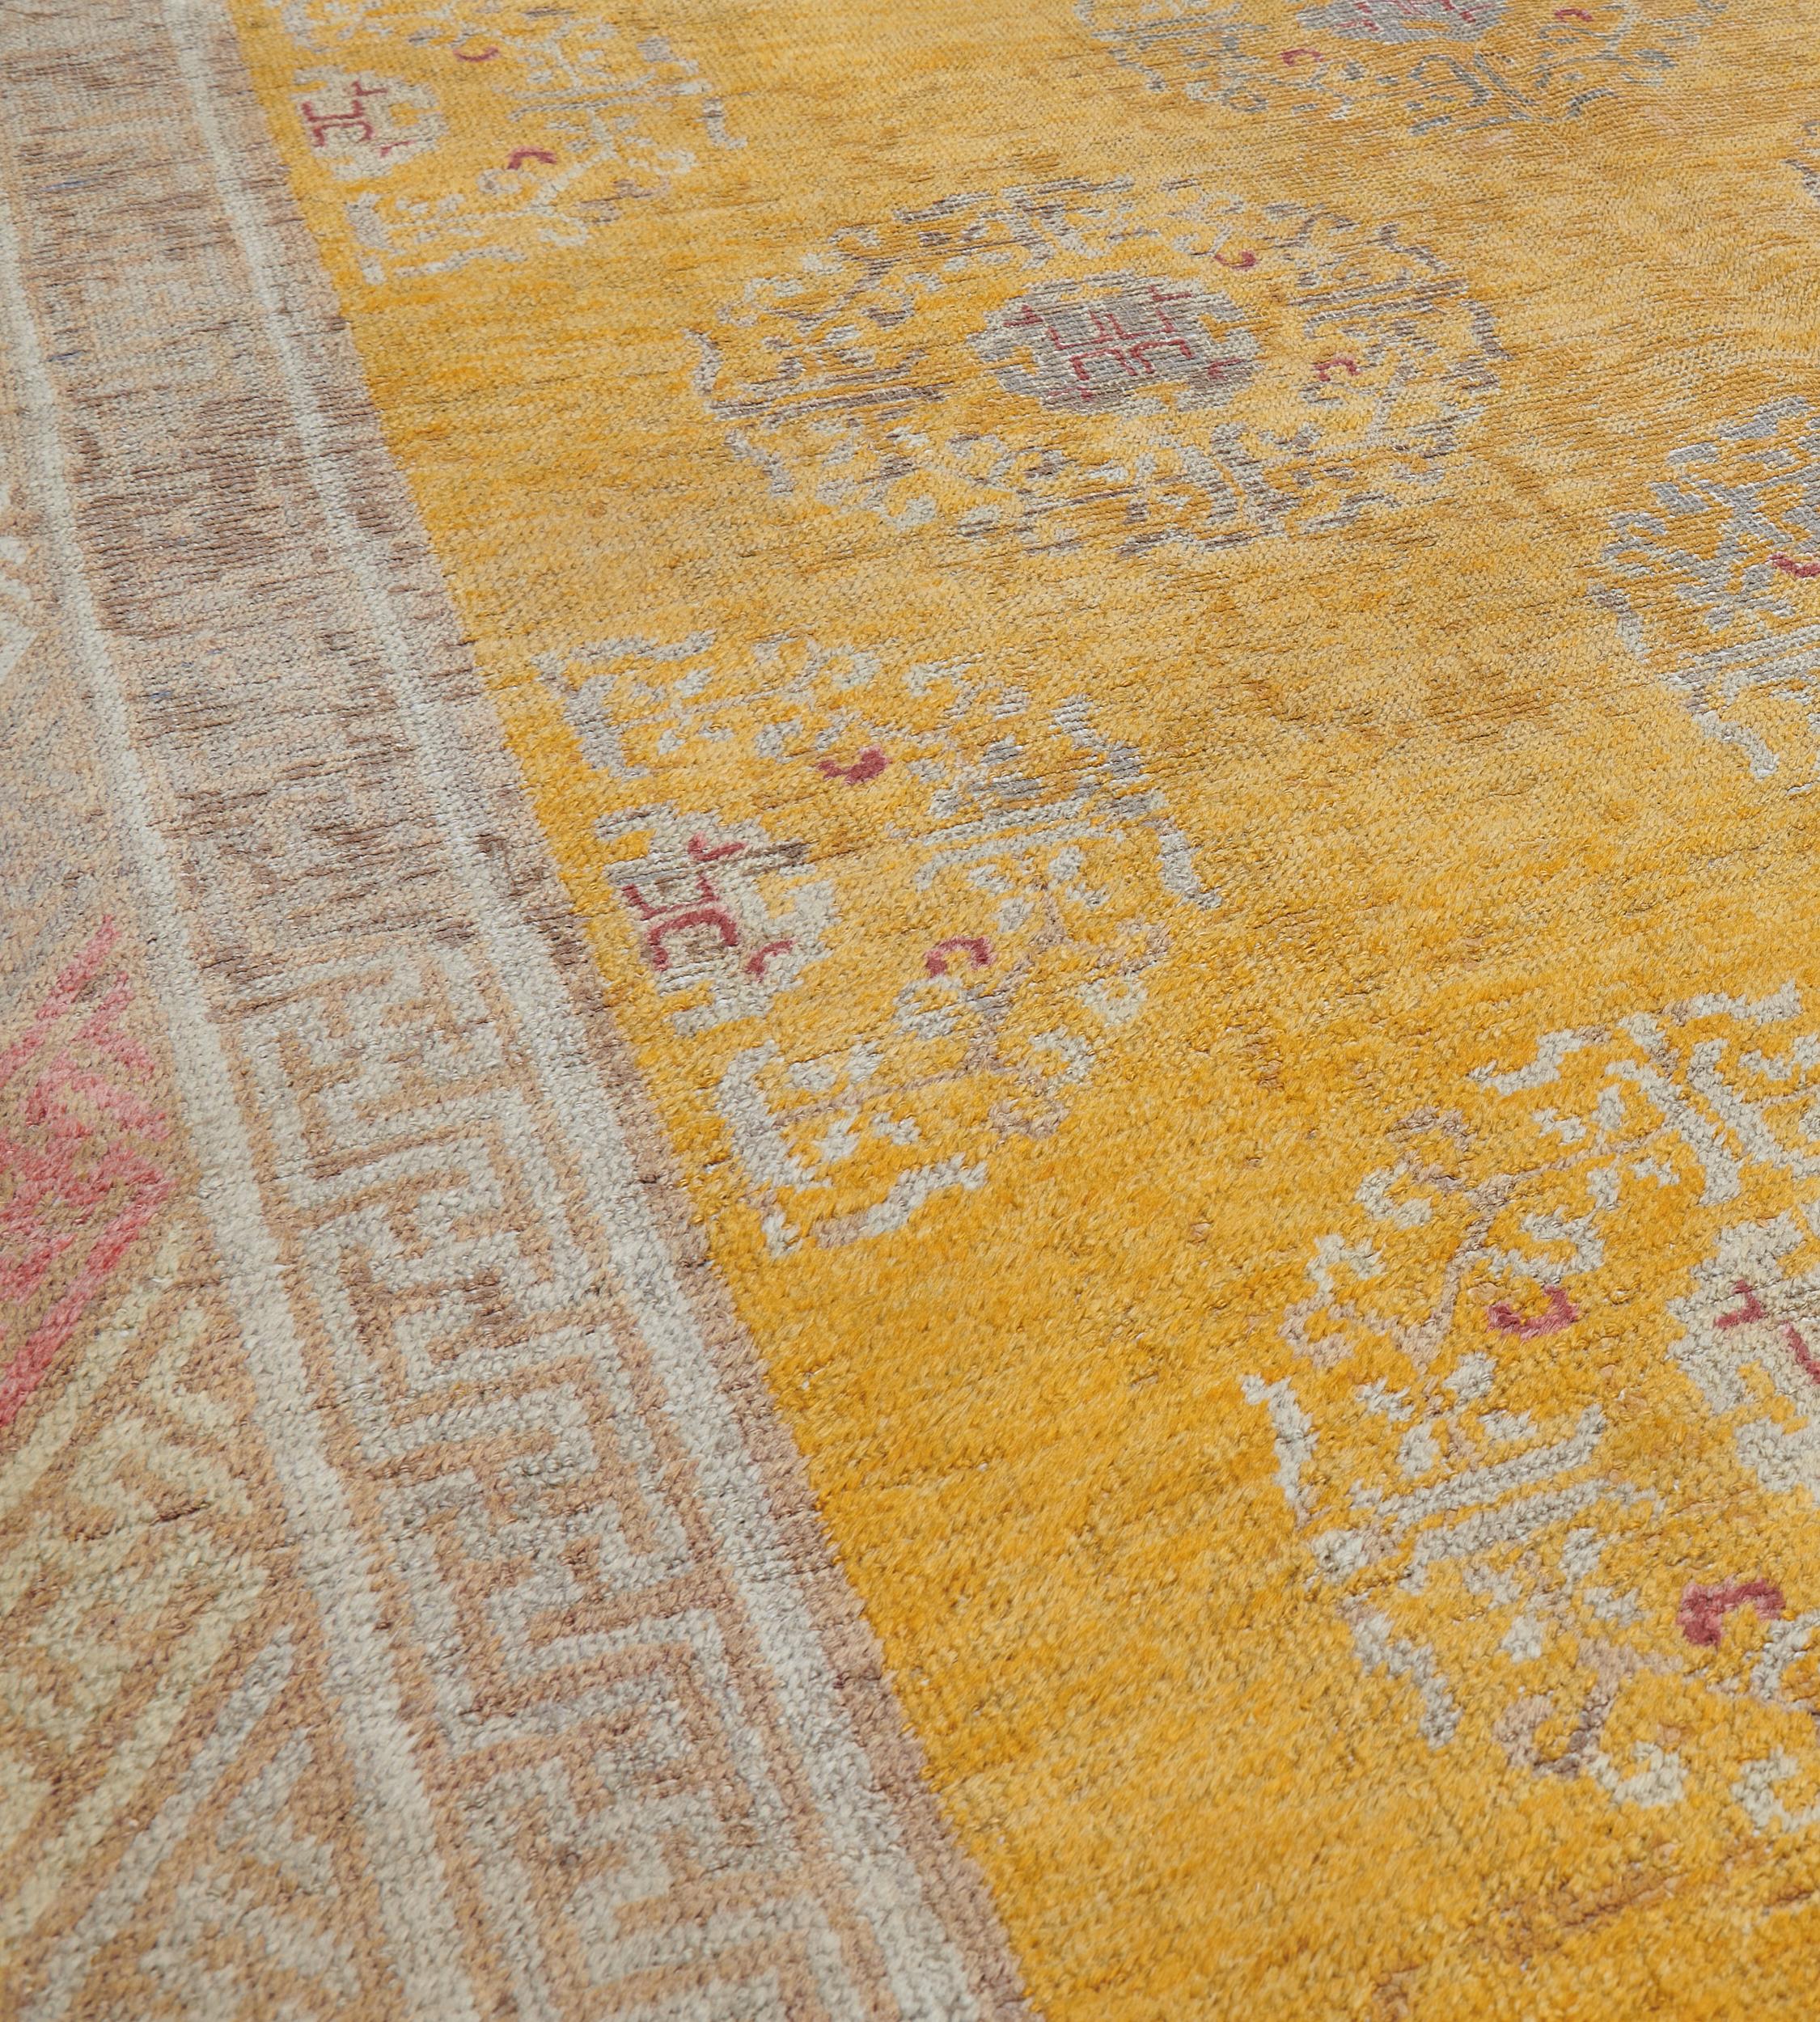 Dieser traditionelle, handgewebte Samarkand-Khotan-Teppich hat ein warmes, goldenes Gesamtfeld mit diagonalen Reihen traditioneller chinesischer geometrischer Kränze in einer raffinierten Doppelschlüsselmuster-Bordüre.